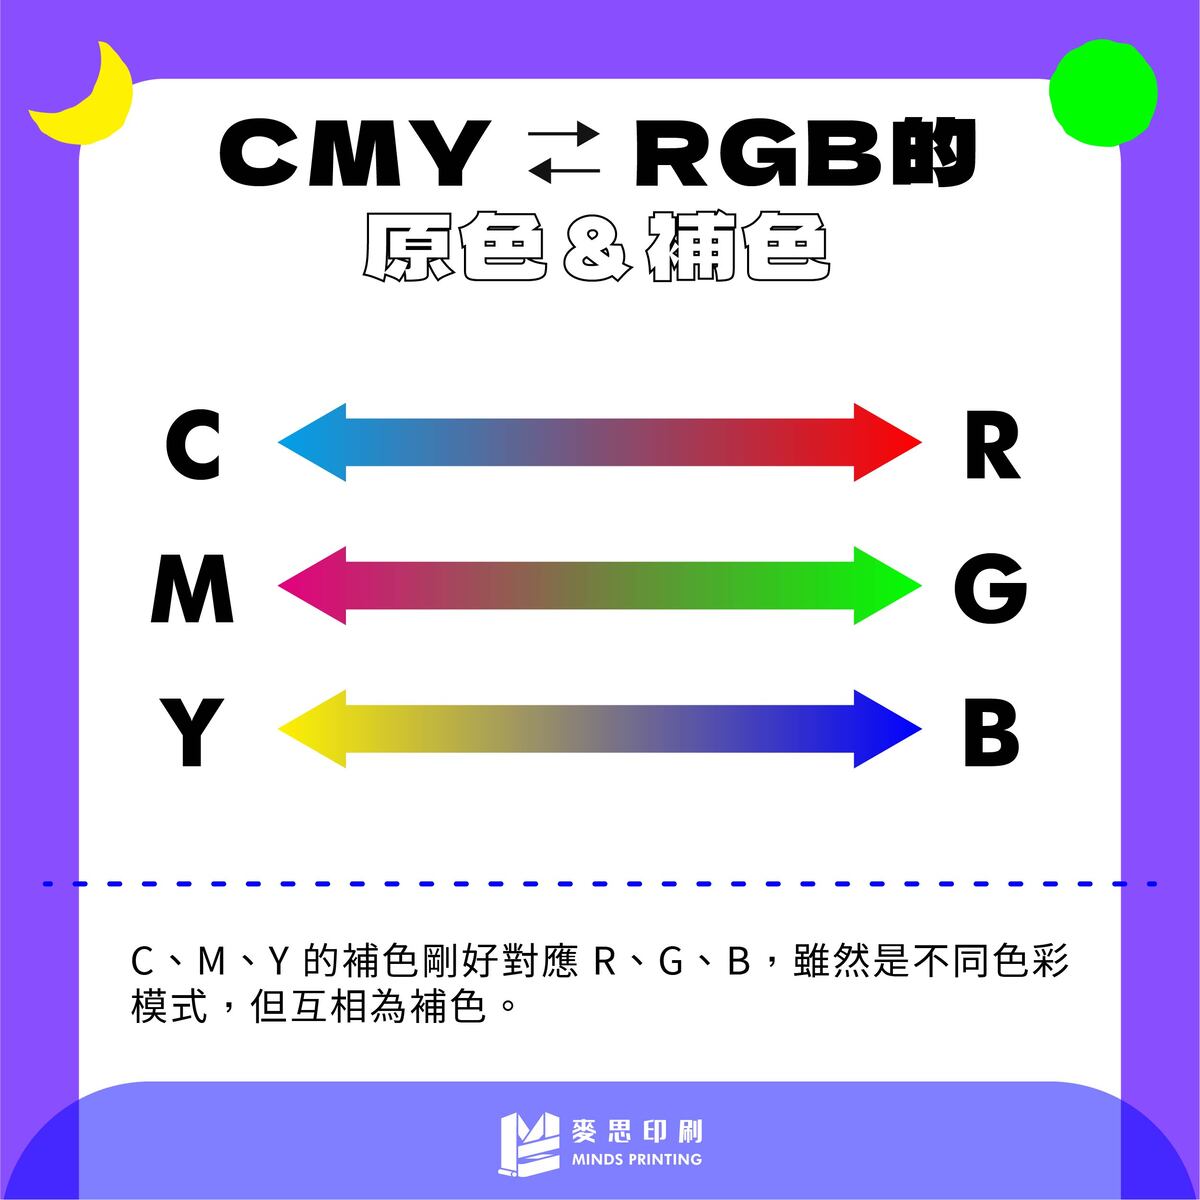 色料混色＆色光混色應用法則－CMYK&RGB的原色及補色